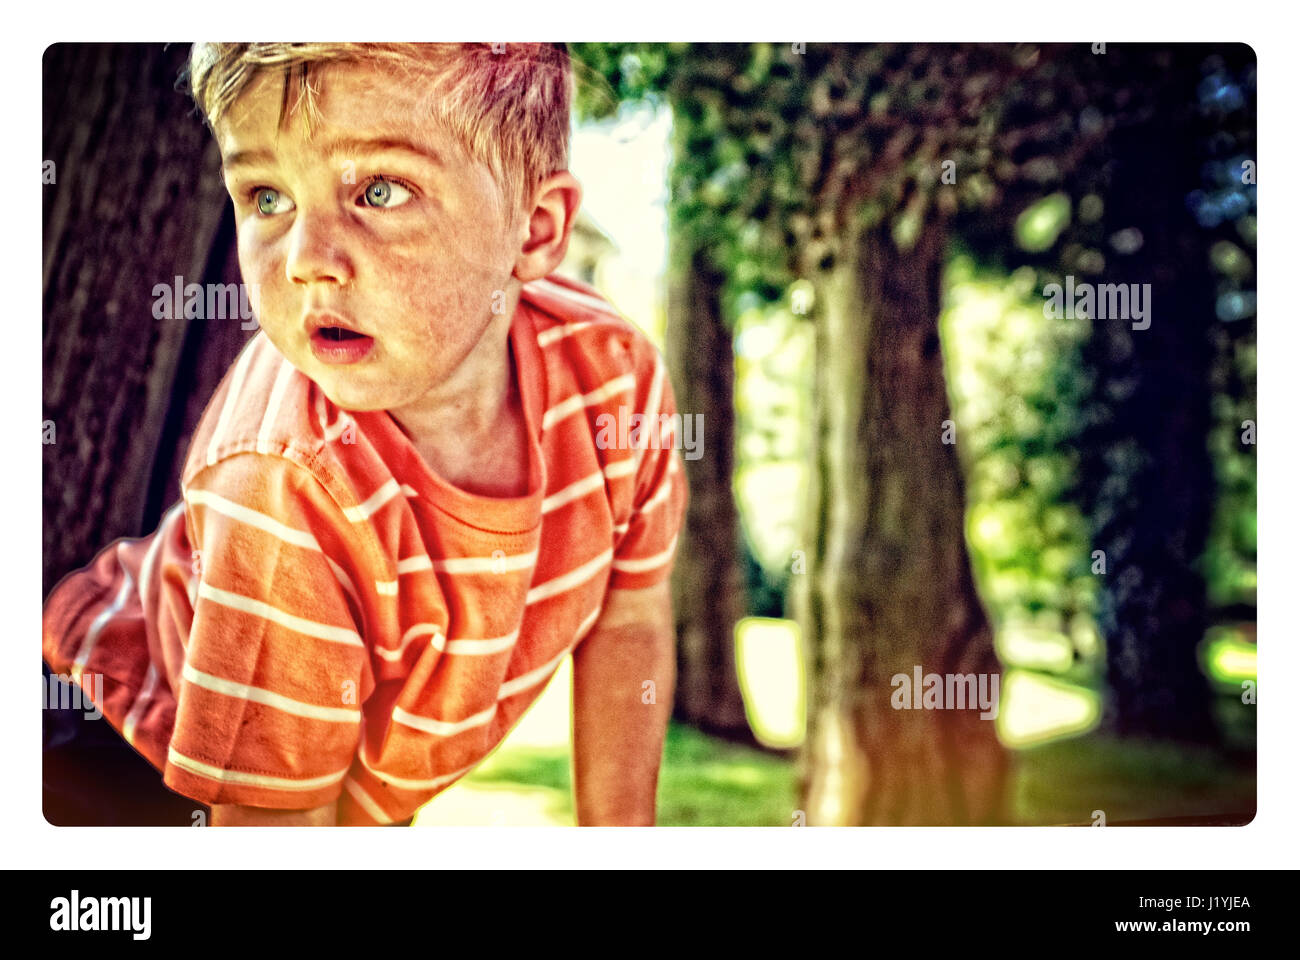 Ein kleiner Junge, zu erforschen und auf Bäume klettern Stockfoto